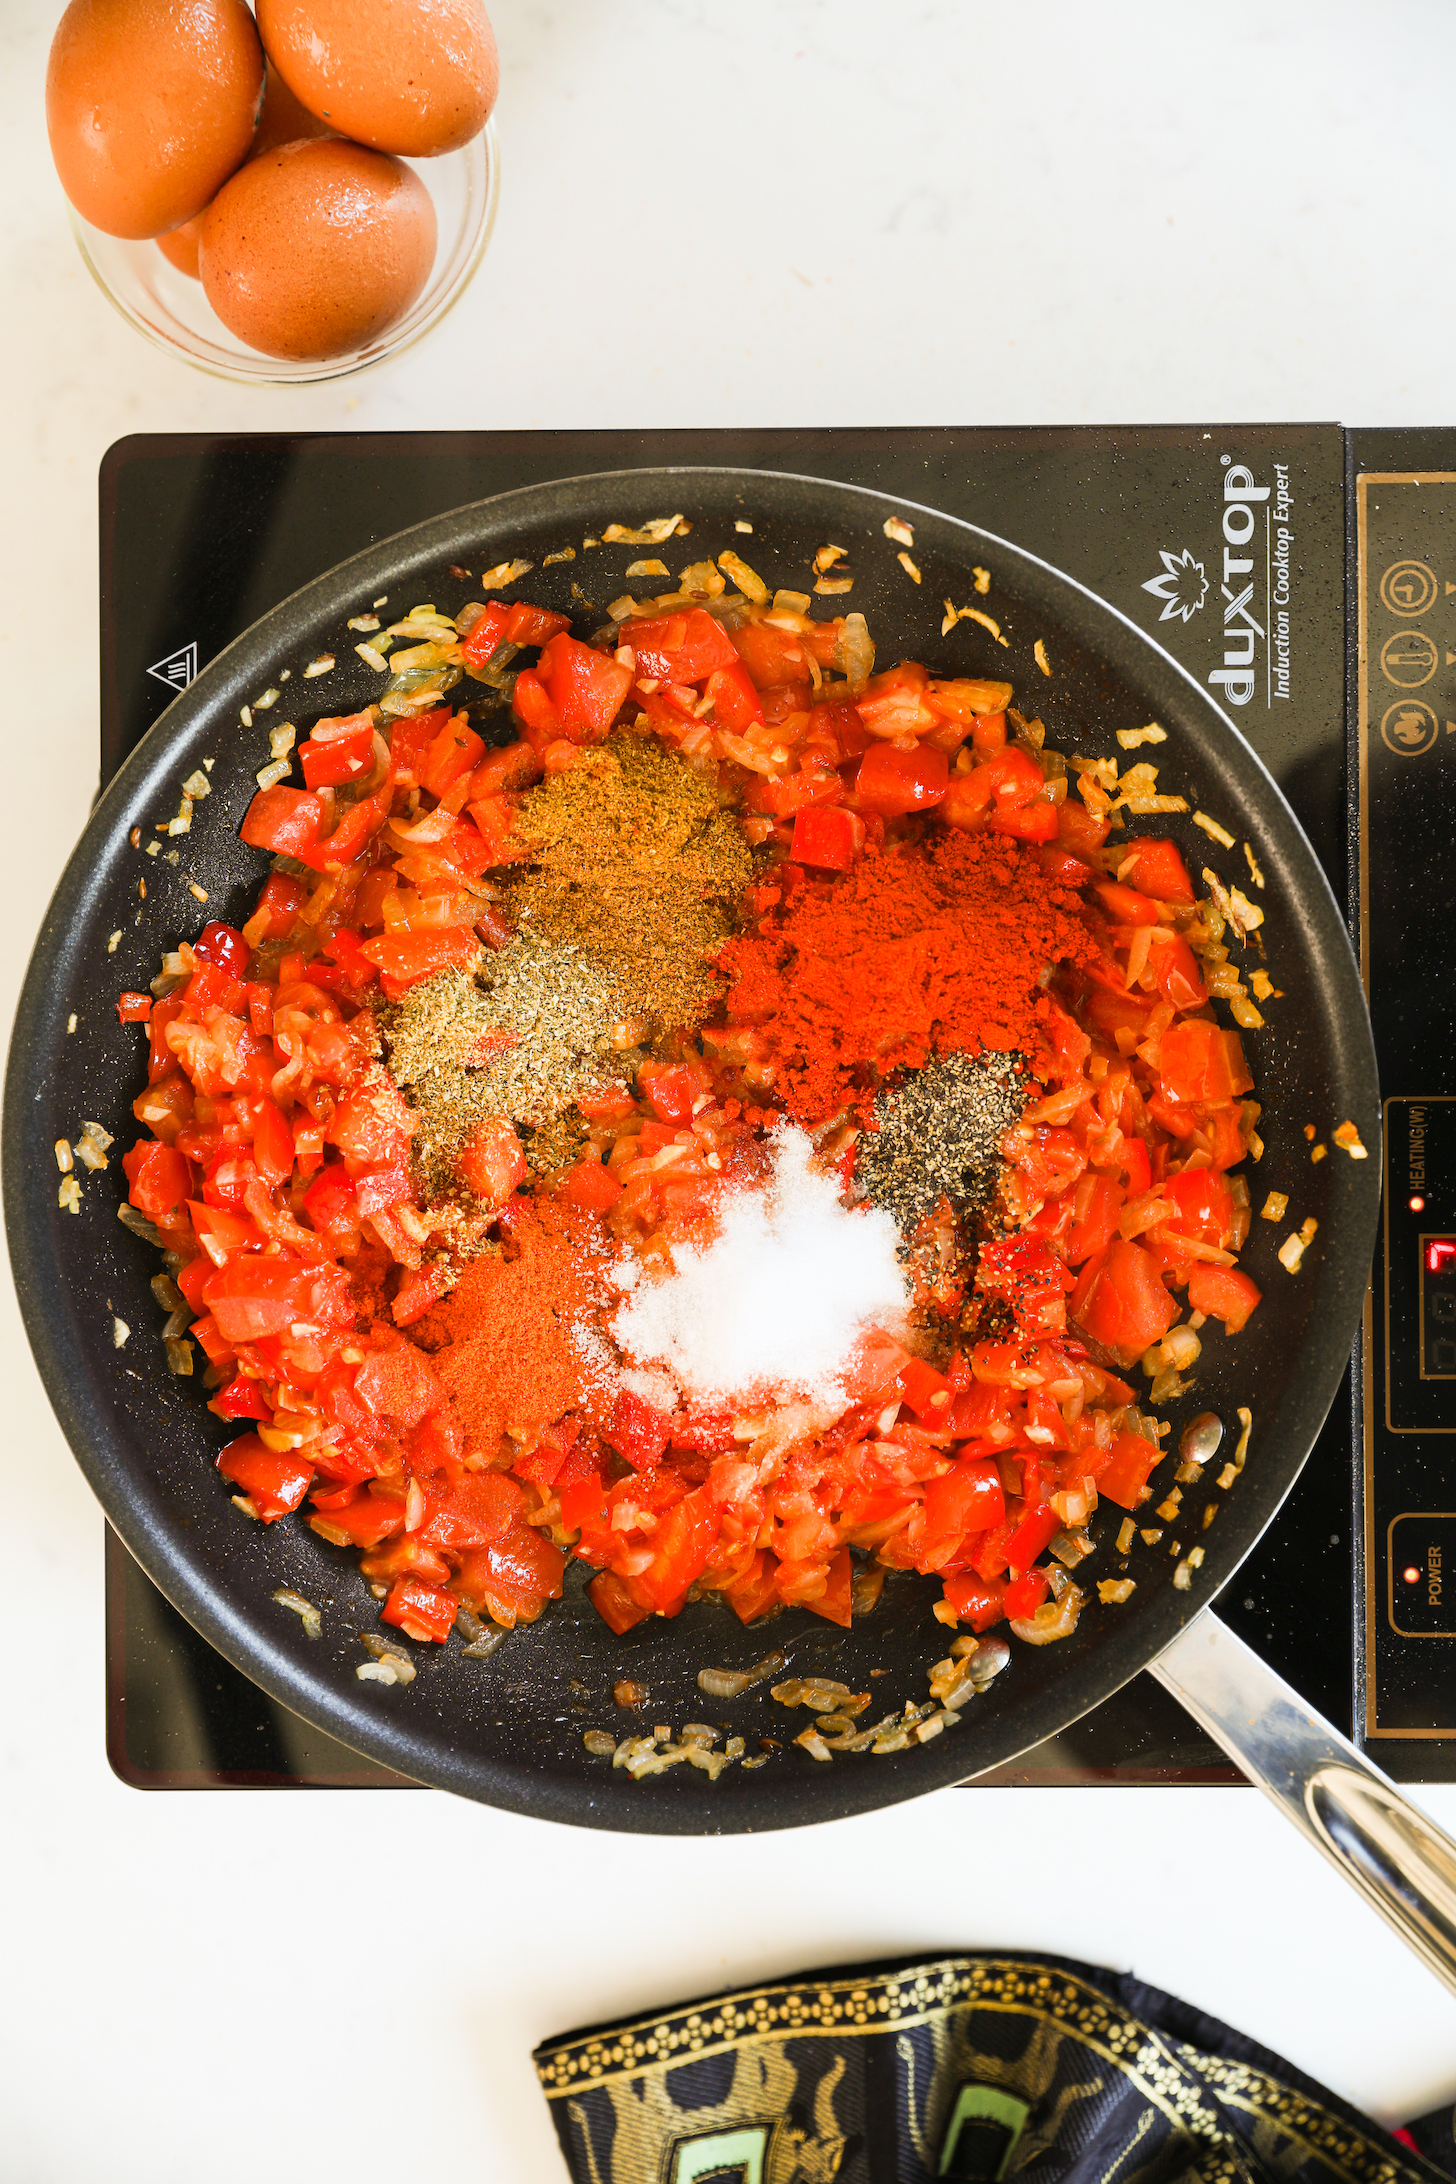 شات بالای سر فلفل، گوجه فرنگی و پیاز خرد شده در روغن با ادویه و نمک سرخ شده است.